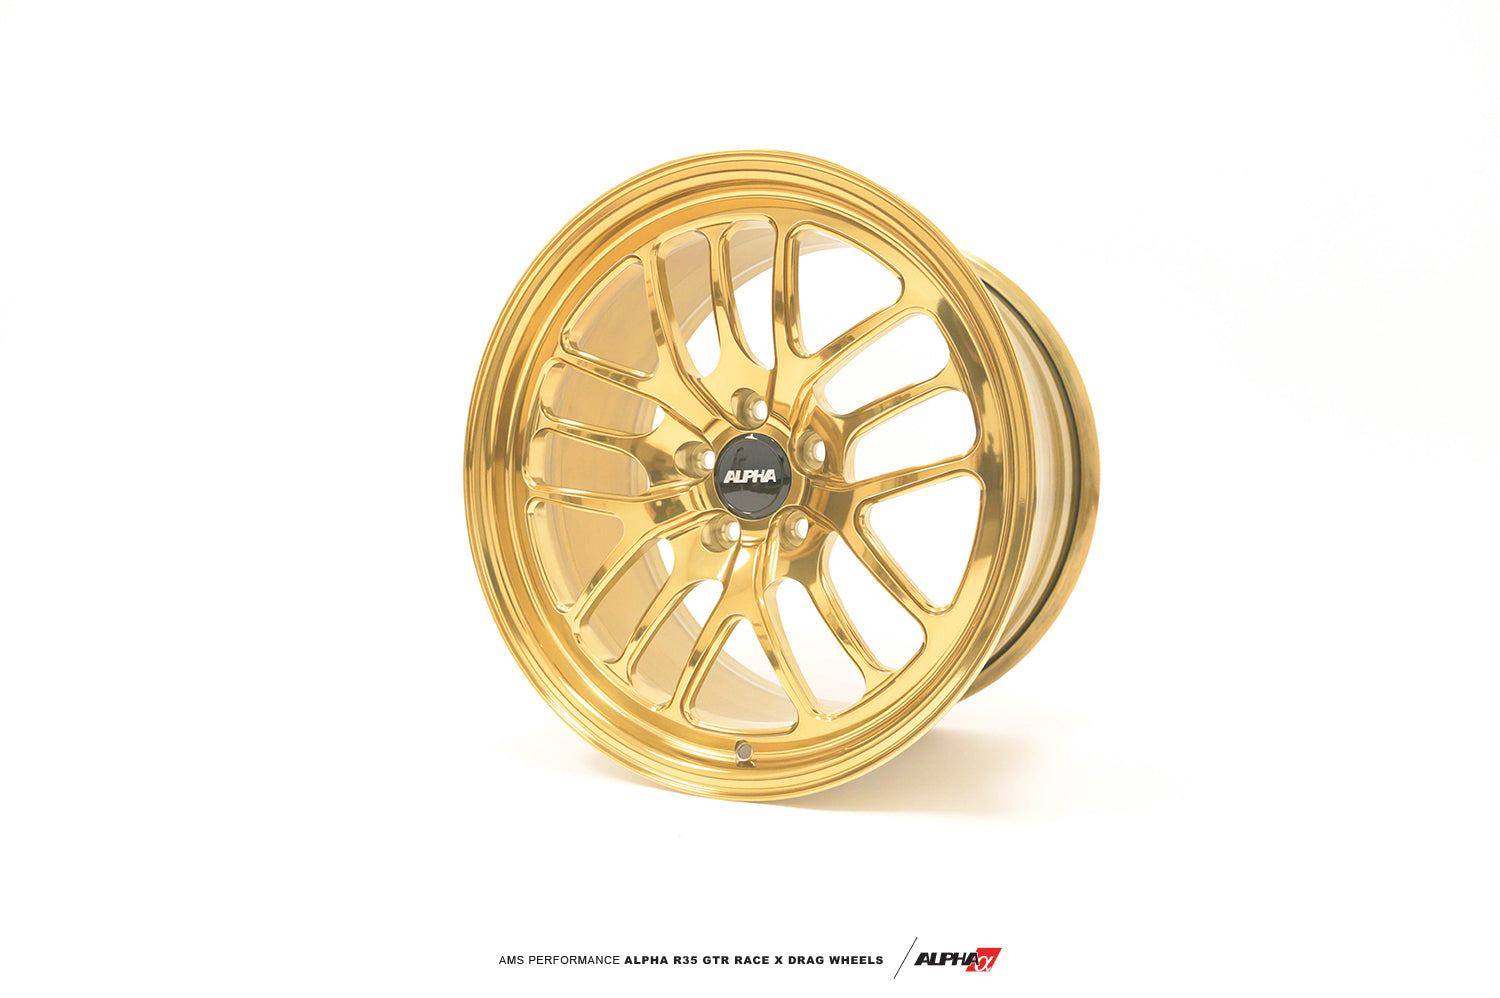 AMS AMS0171F6555 ALPHA Performance Race X 17X10 "2-Piece Rear Drag Wheel (Each) Photo-1 